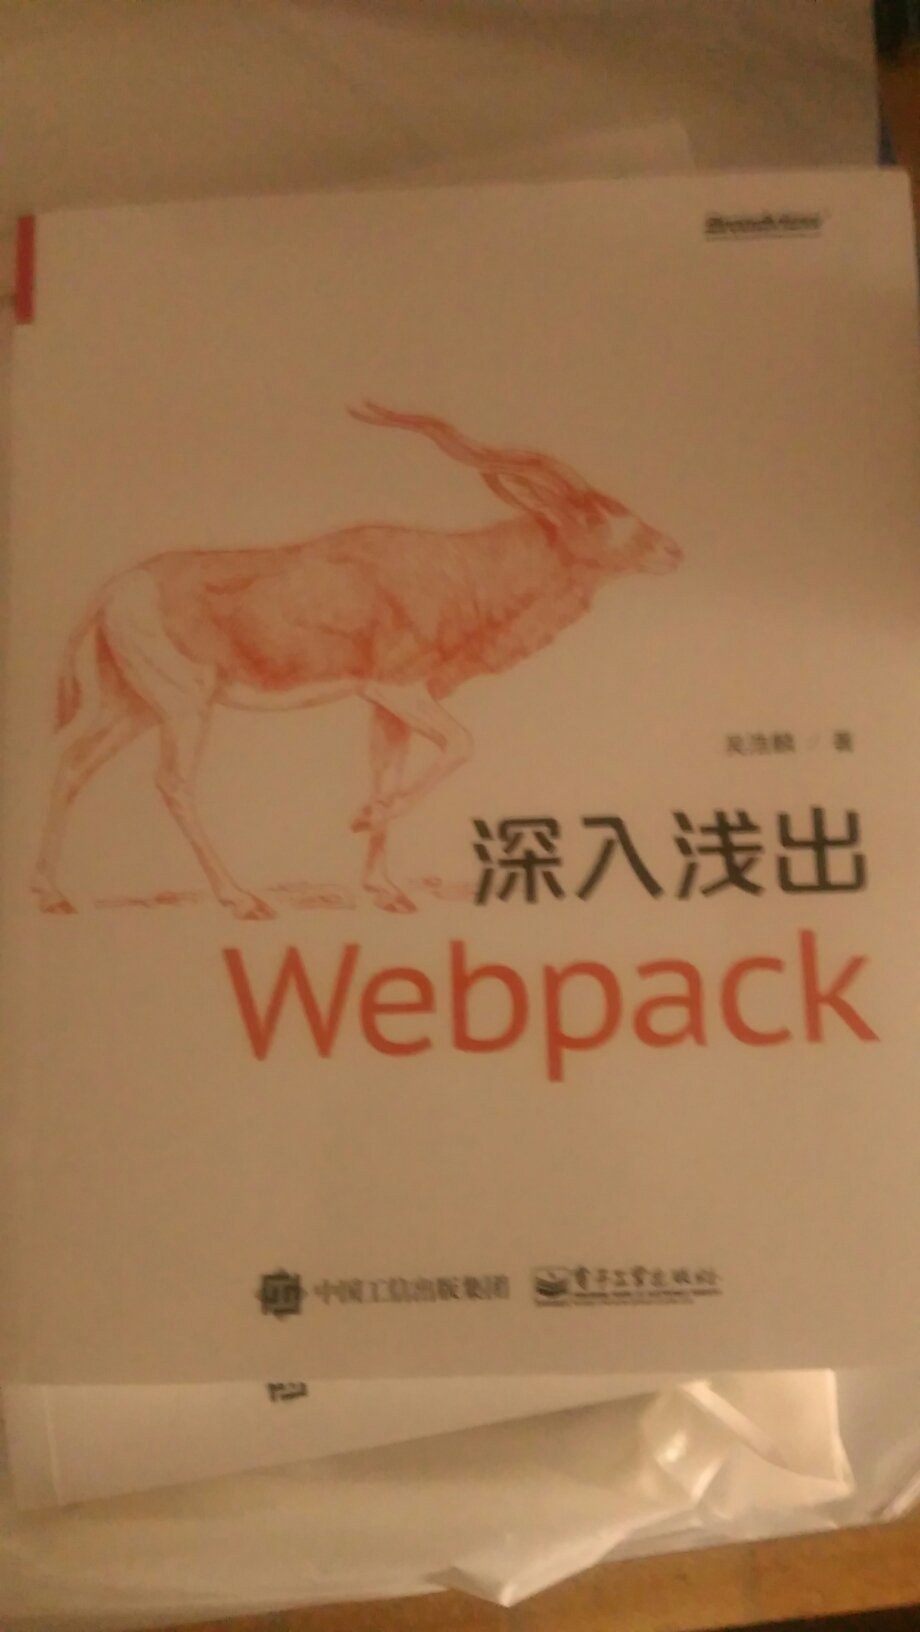 第一本webpack书！必须支持！前端打包，自动化，当今的工程越显重要！